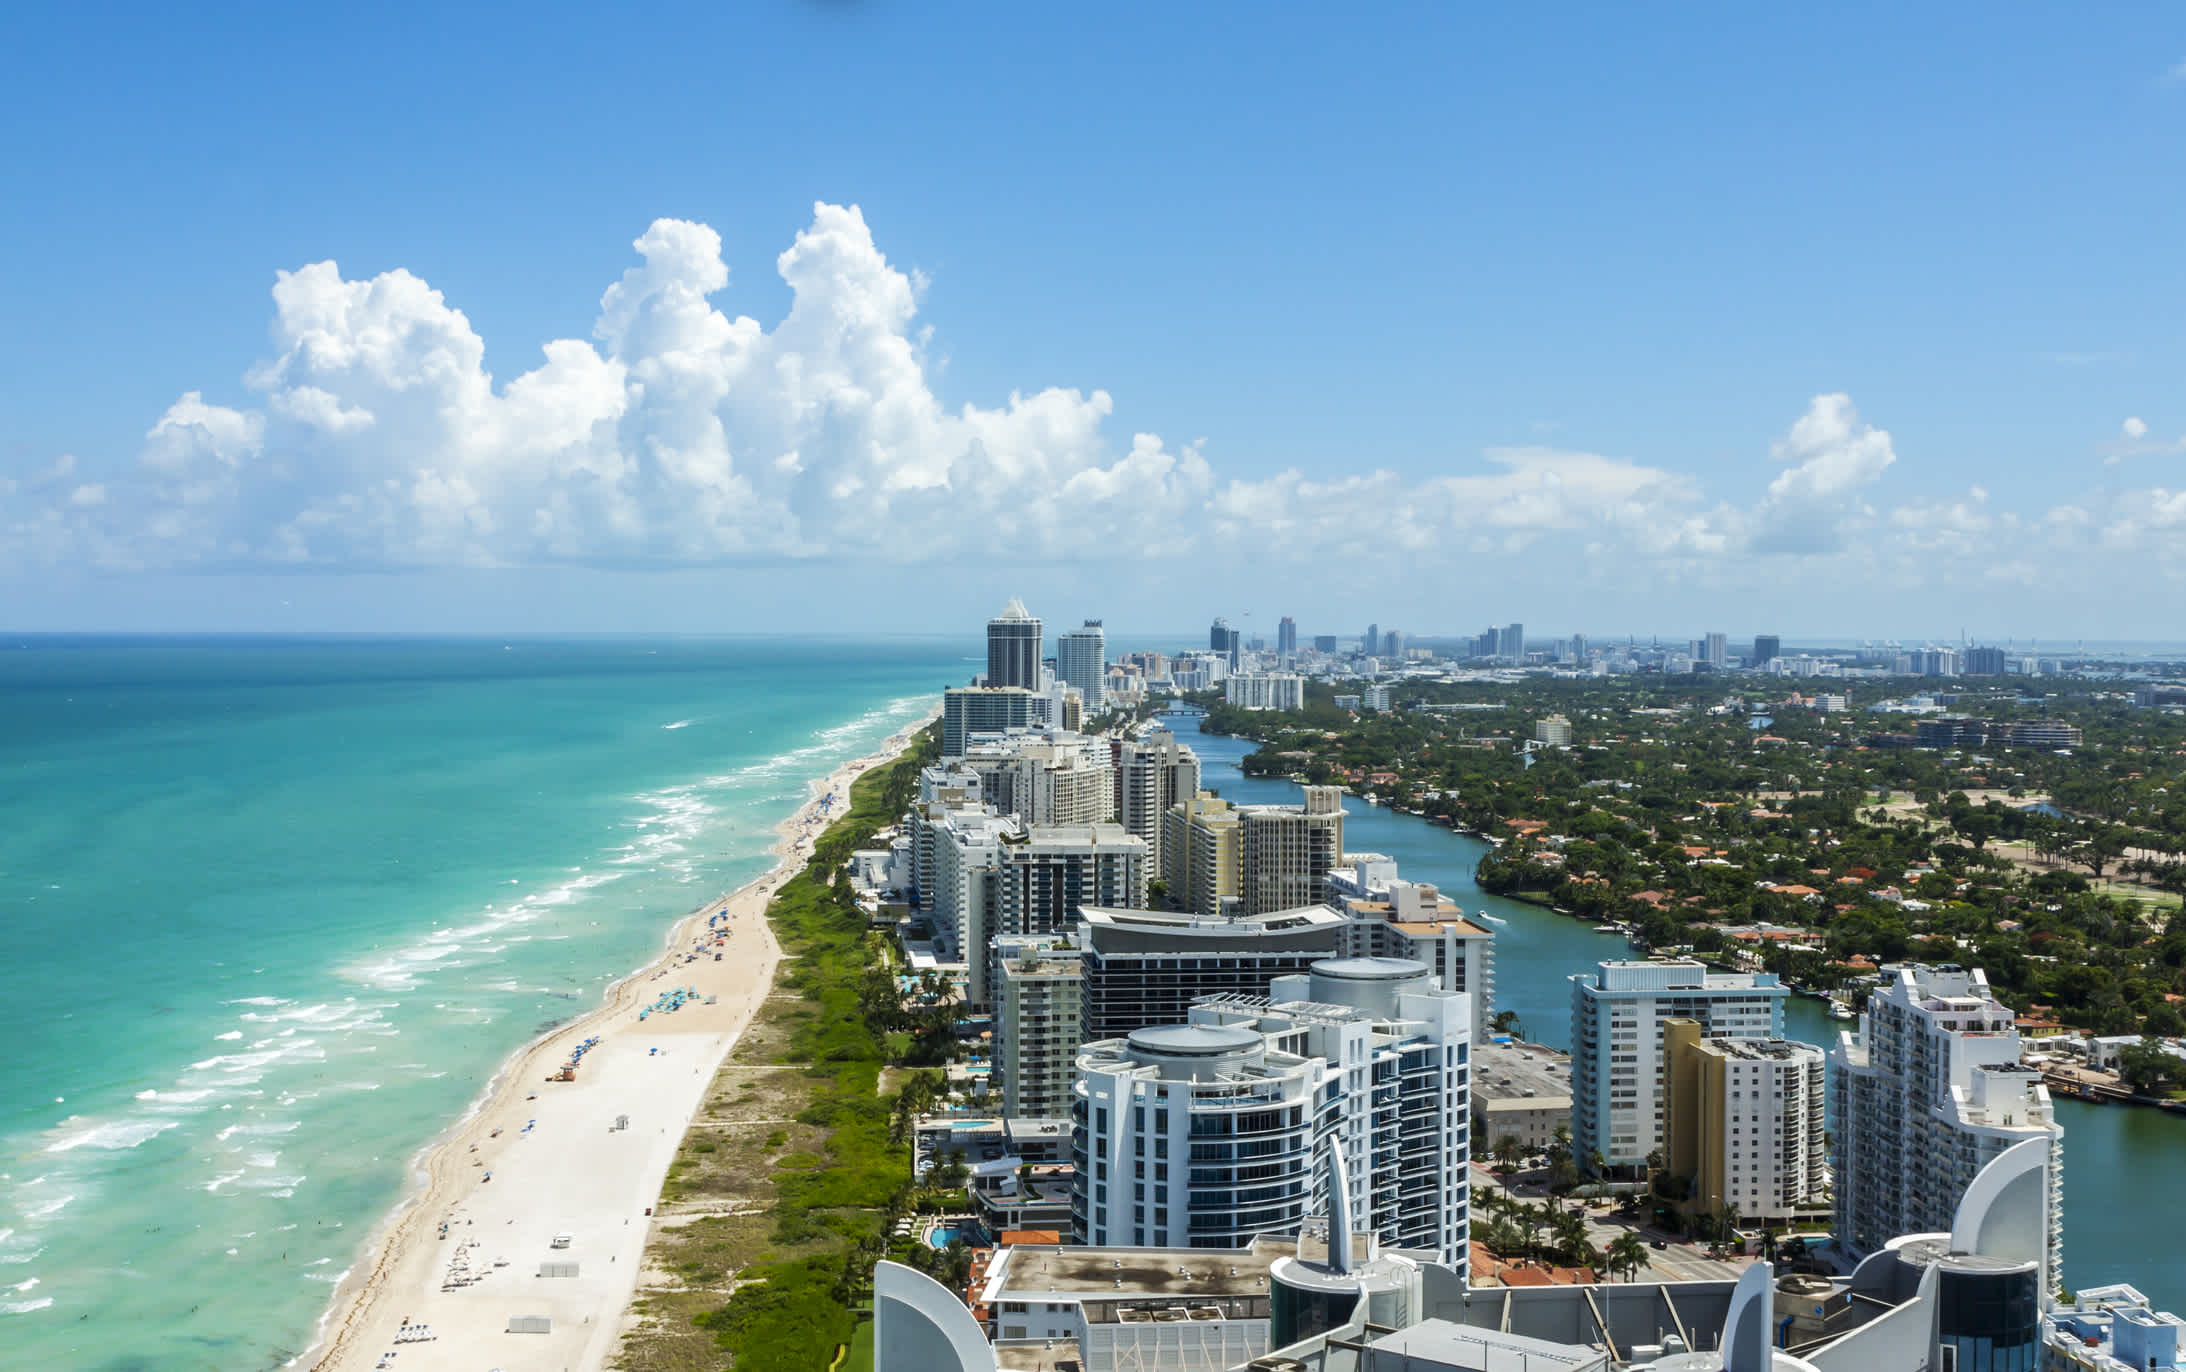 Erleben Sie bei Ihrem Miami Urlaub einen einzigartigen Blick auf die Skyline